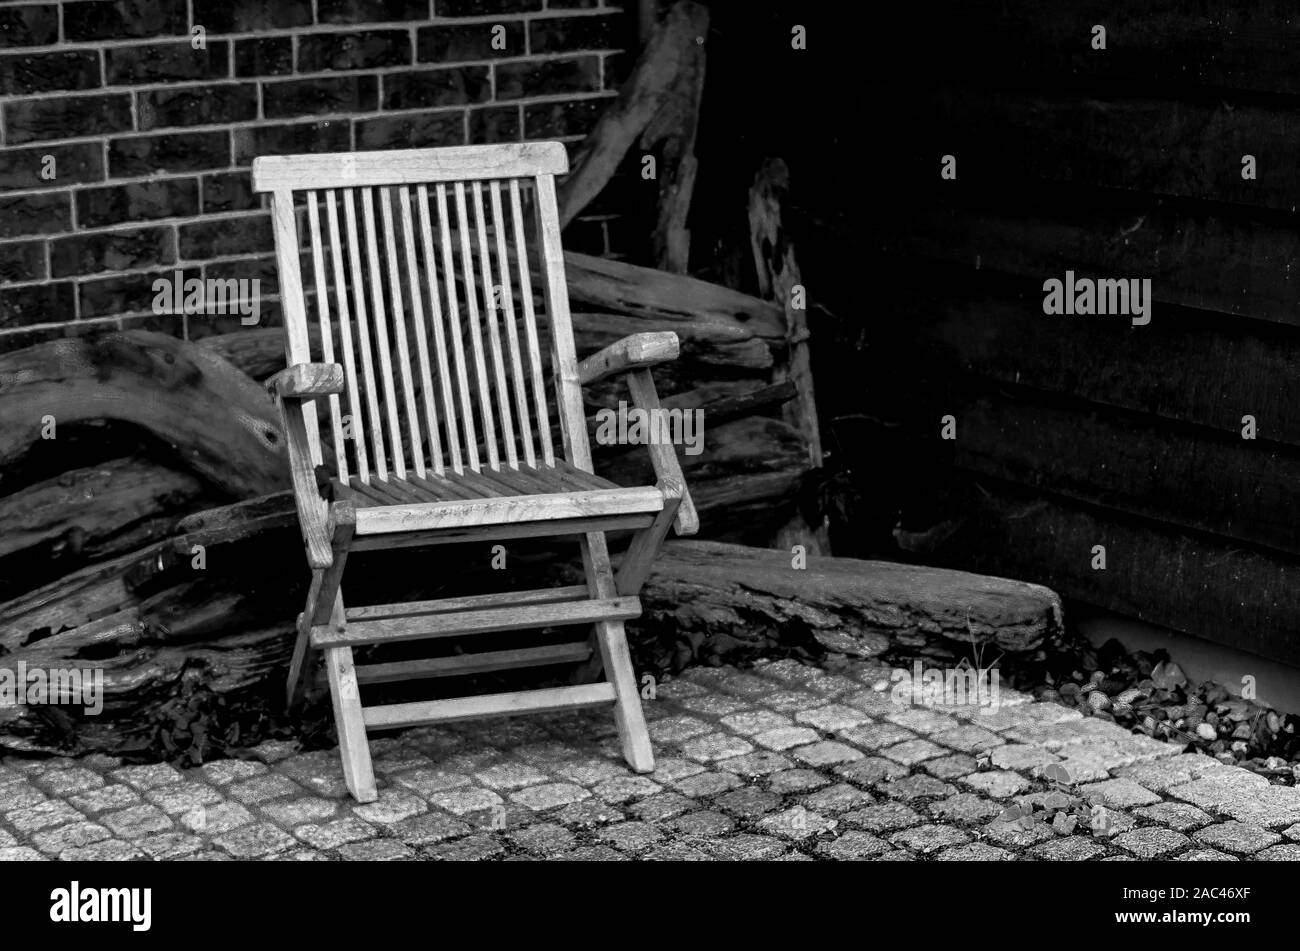 Chaise en bois vide, l'arrière-plan à partir de vieux morceaux de bois, planches de paroi latérale. Photo en noir et blanc, style rétro. Banque D'Images